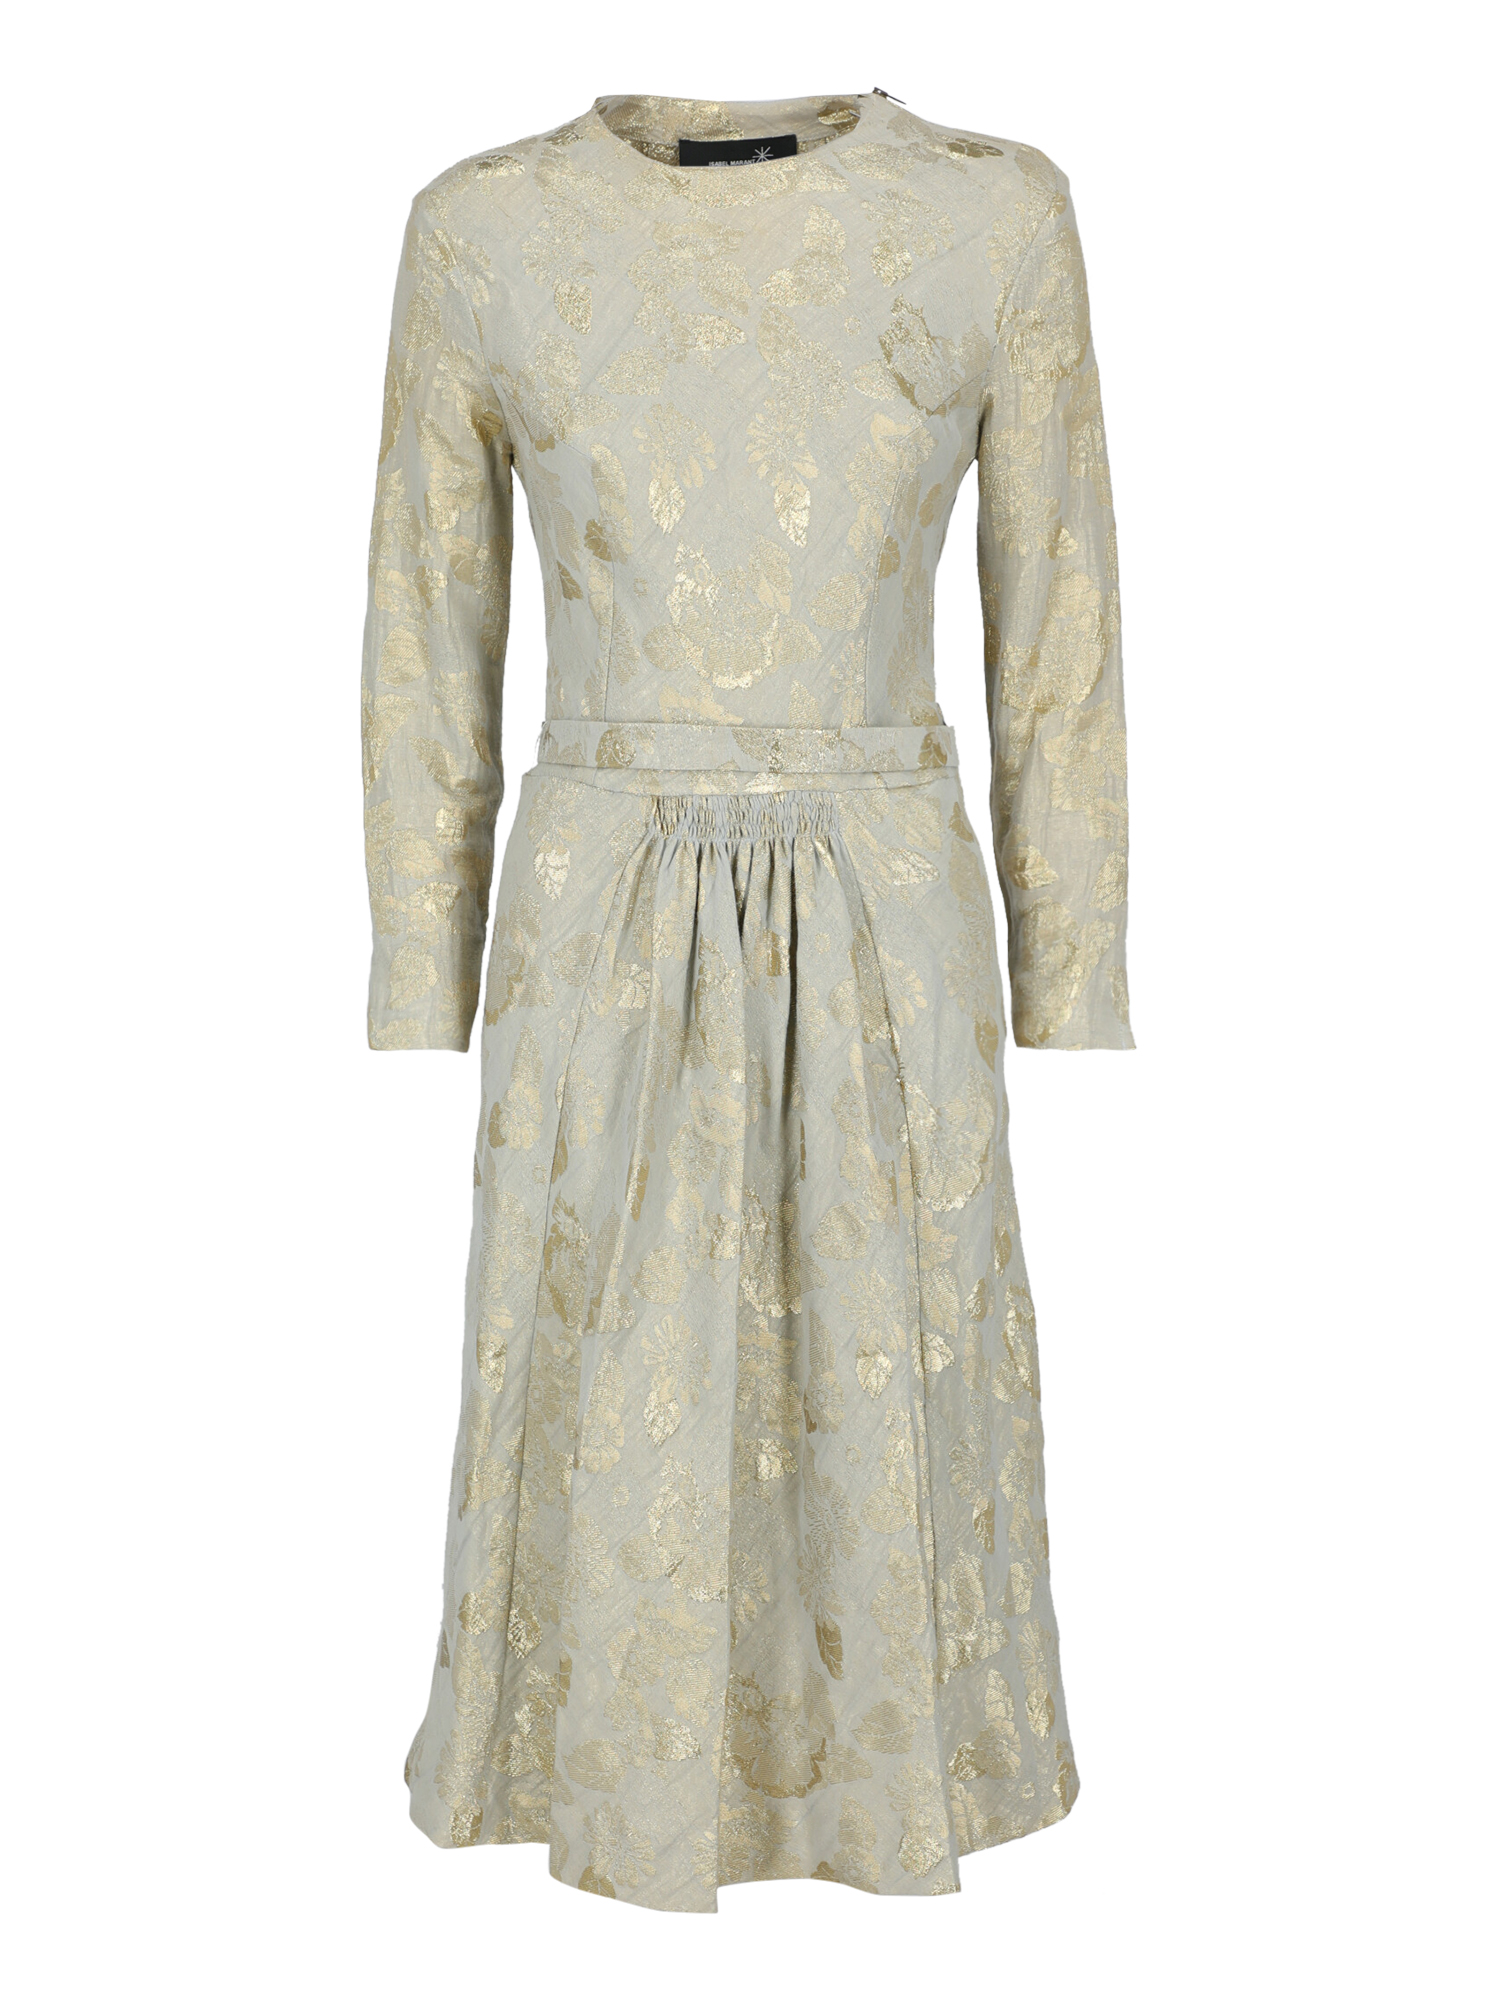 Isabel Marant Femme Robes Beige, Gold Cotton